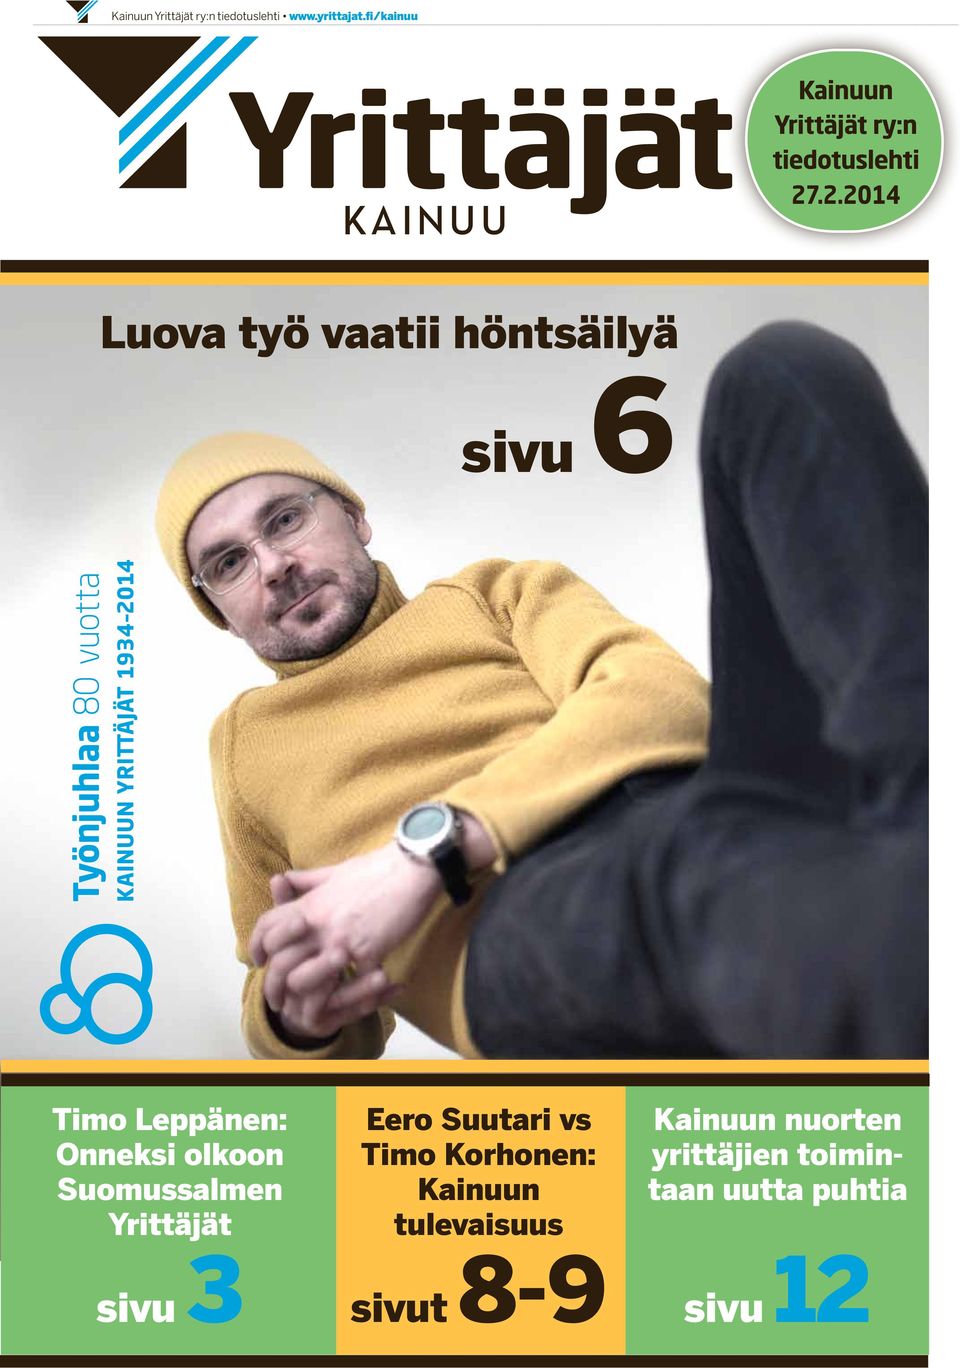 .2.2014 Luova työ vaatii höntsäilyä sivu 6 Timo Leppänen: Onneksi olkoon